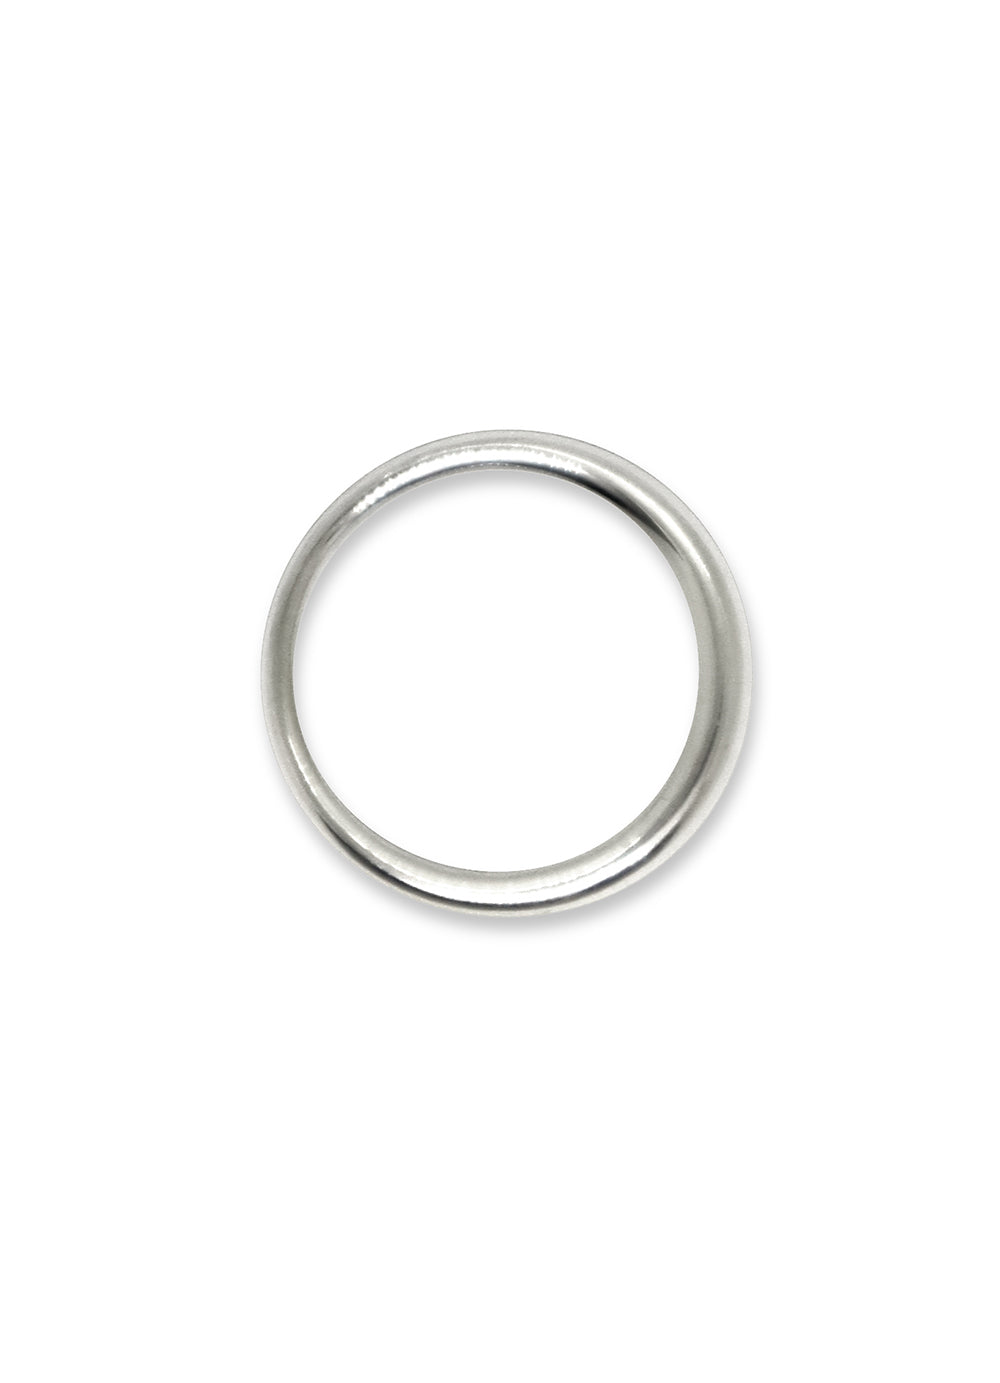 Moghes-Small-Circle-Ring